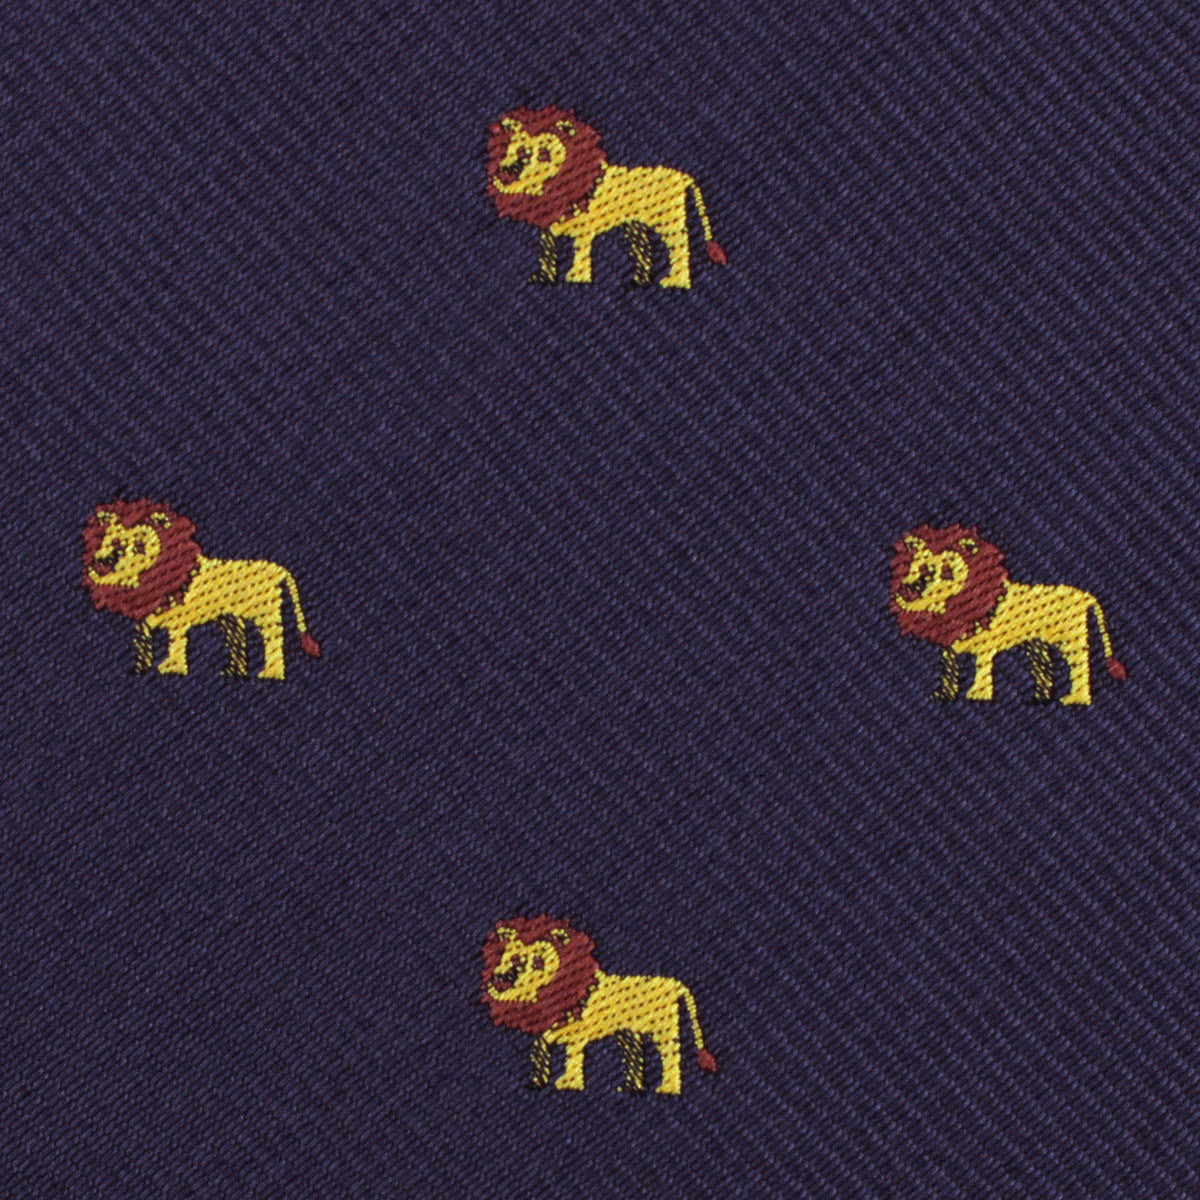 African Lion Fabric Necktie